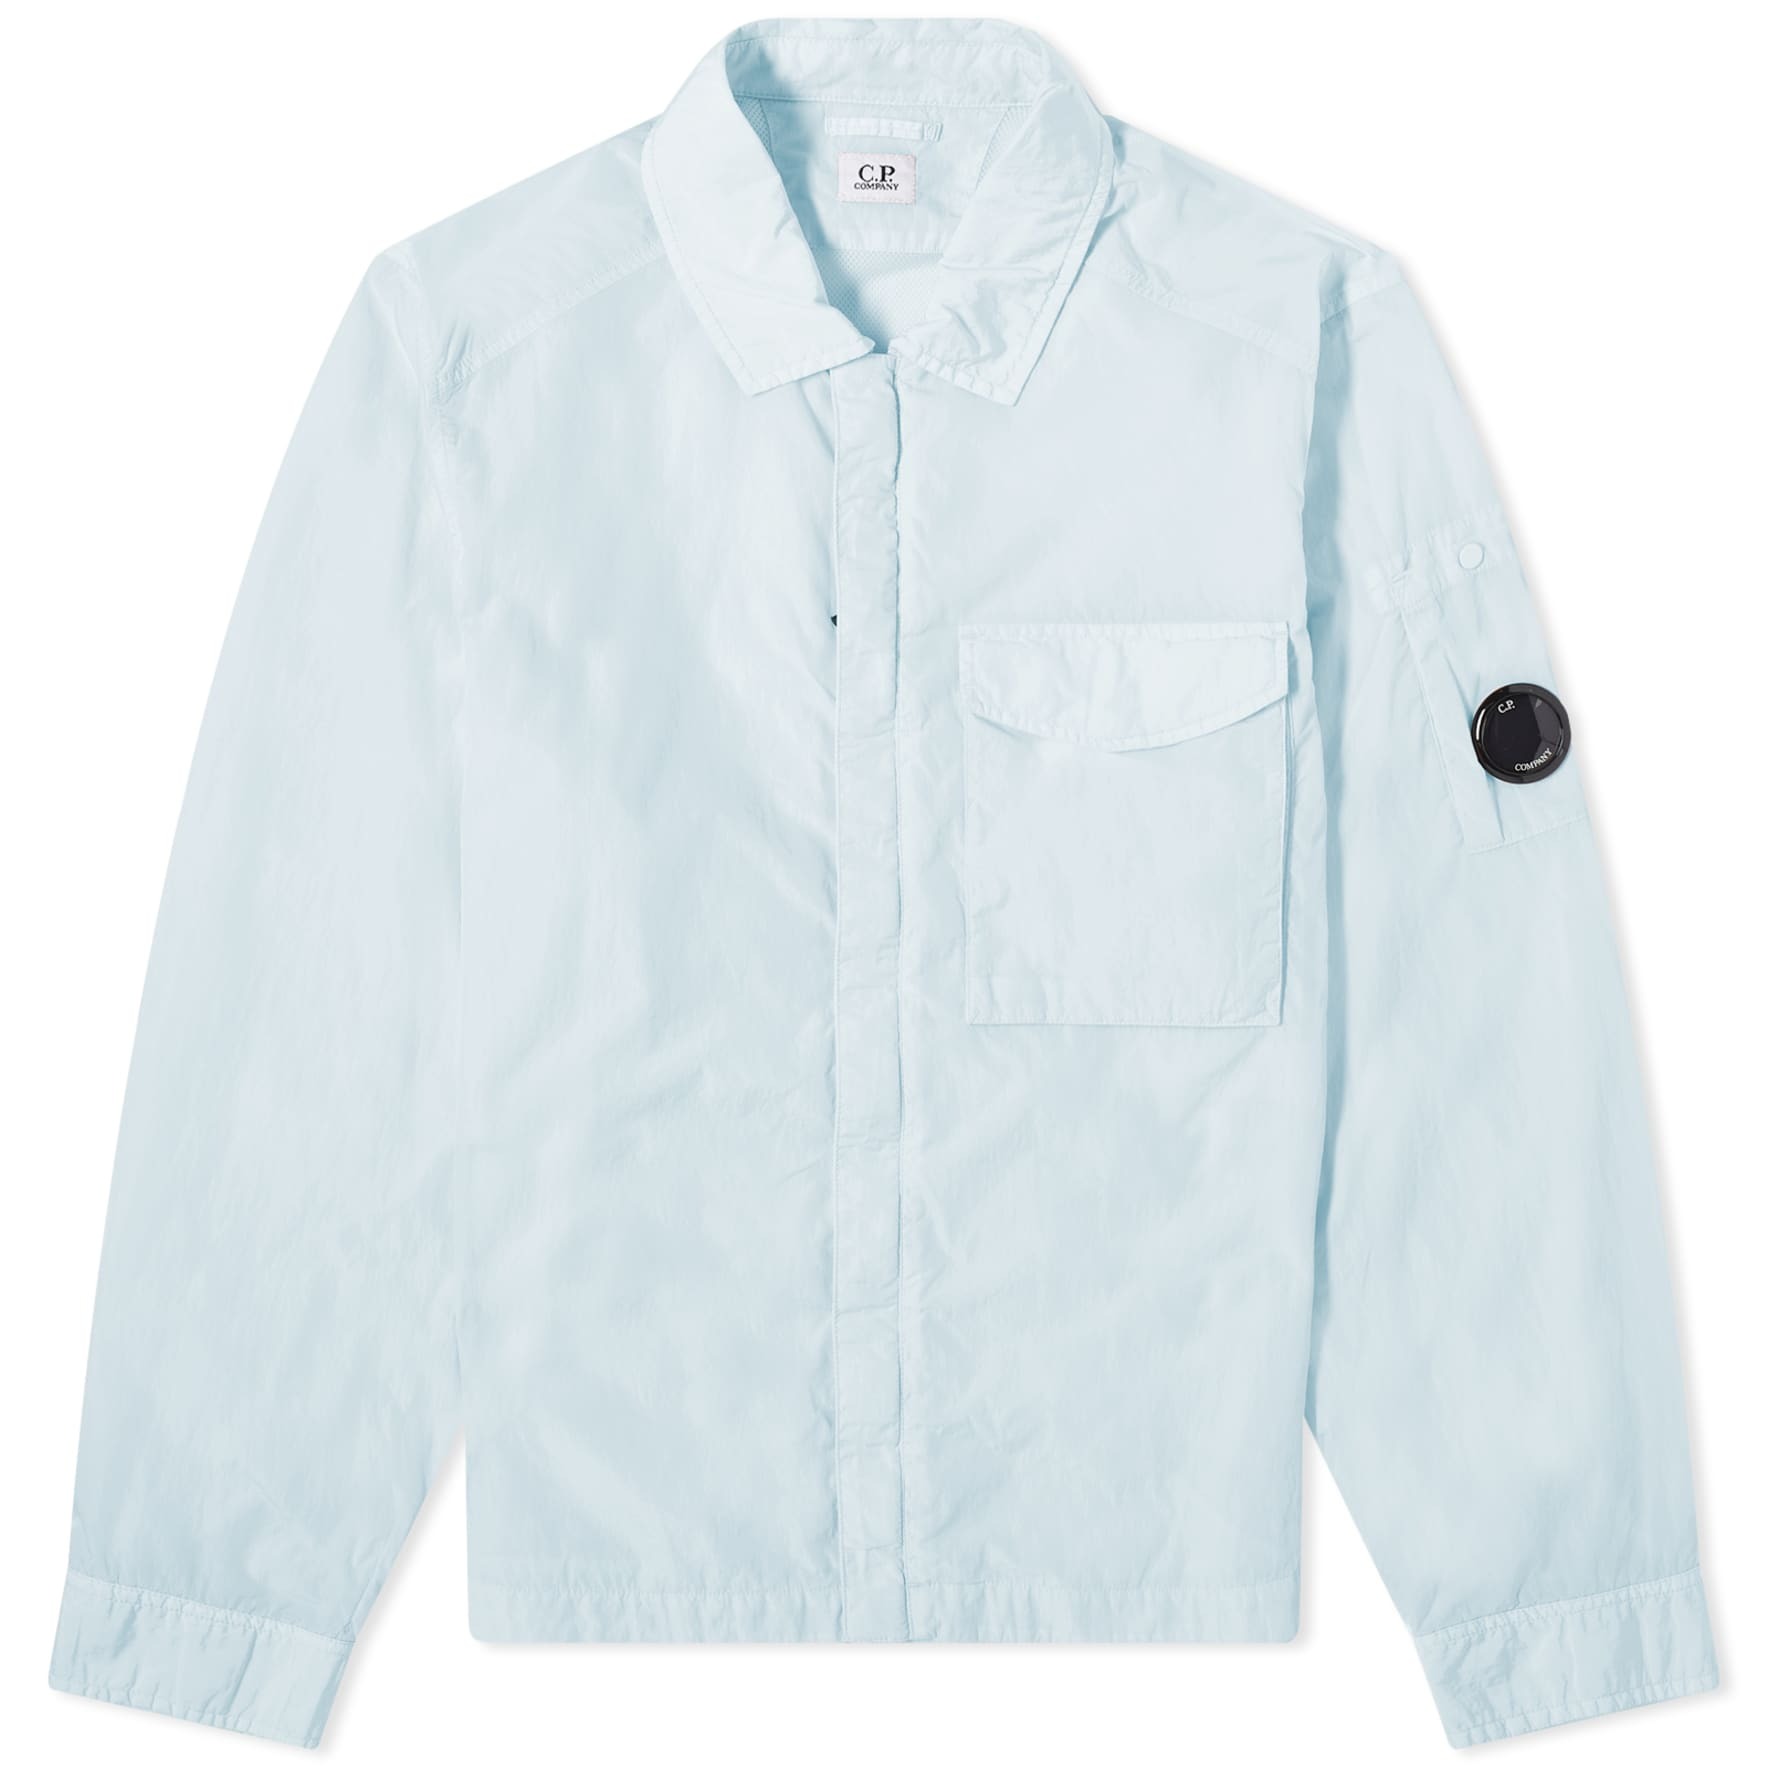 Куртка-рубашка C.P. Company Chrome-R Pocket, голубой куртка рубашка c p company chrome r pocket голубой